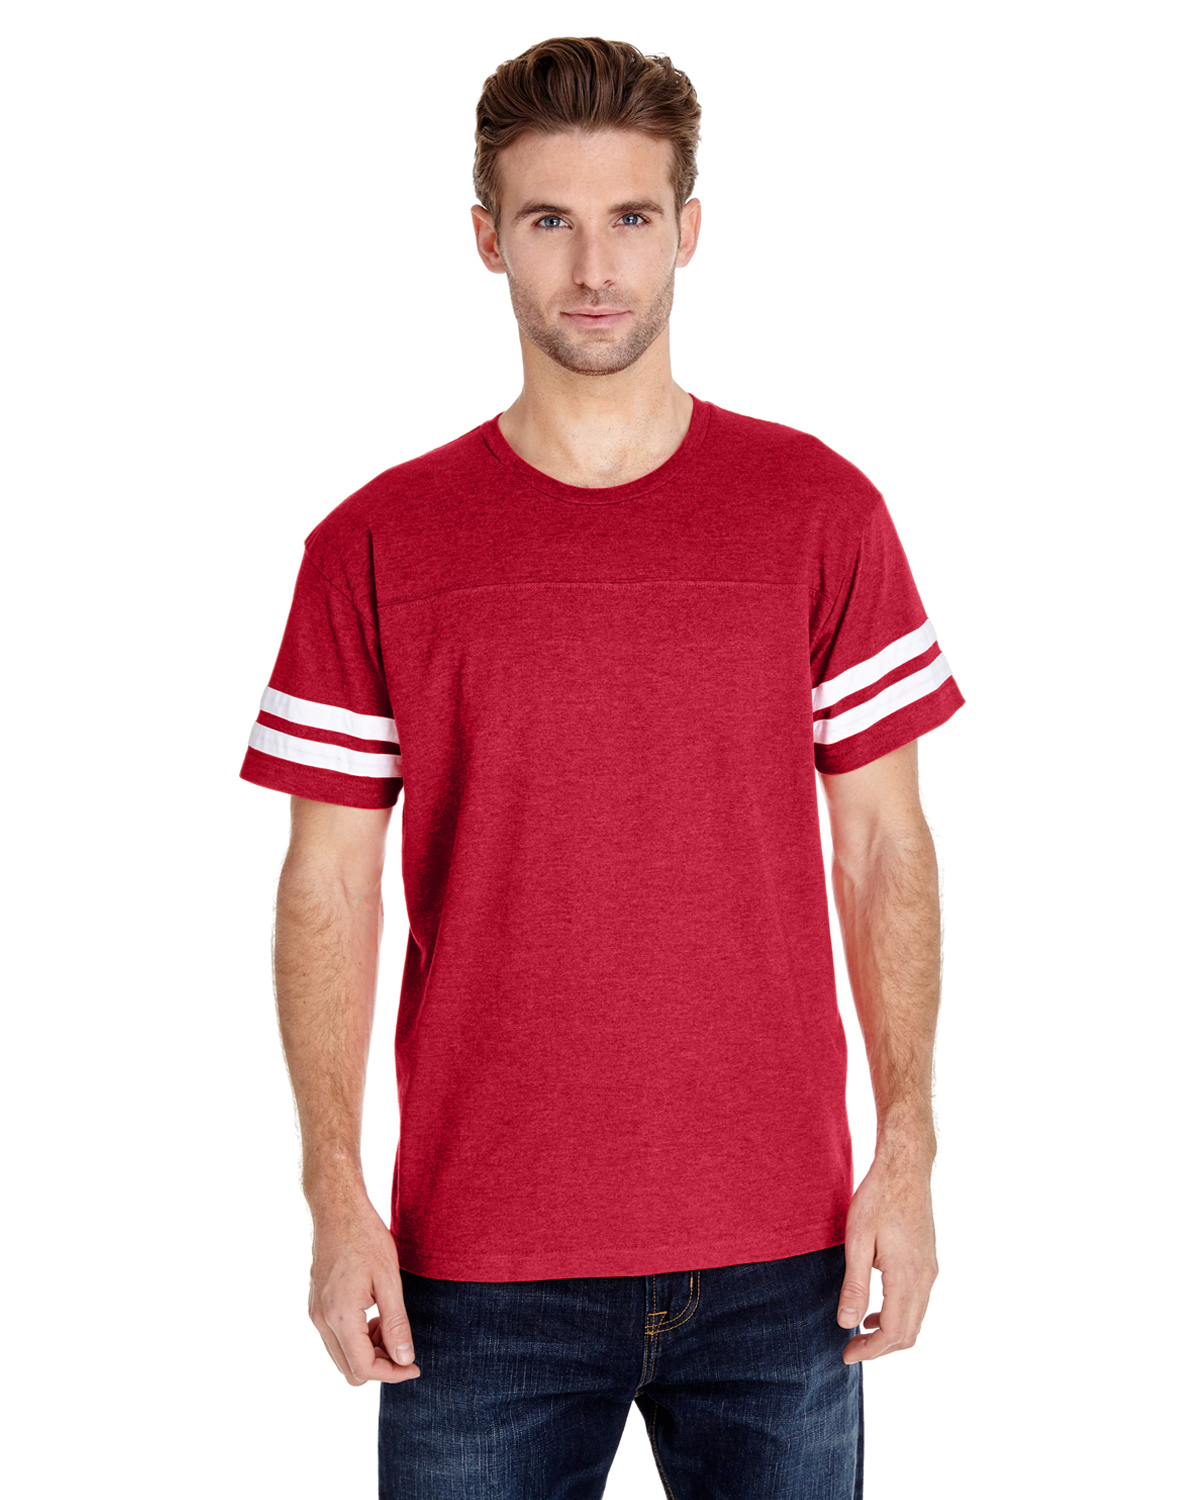 Vintage Men's T-Shirt - Red - L